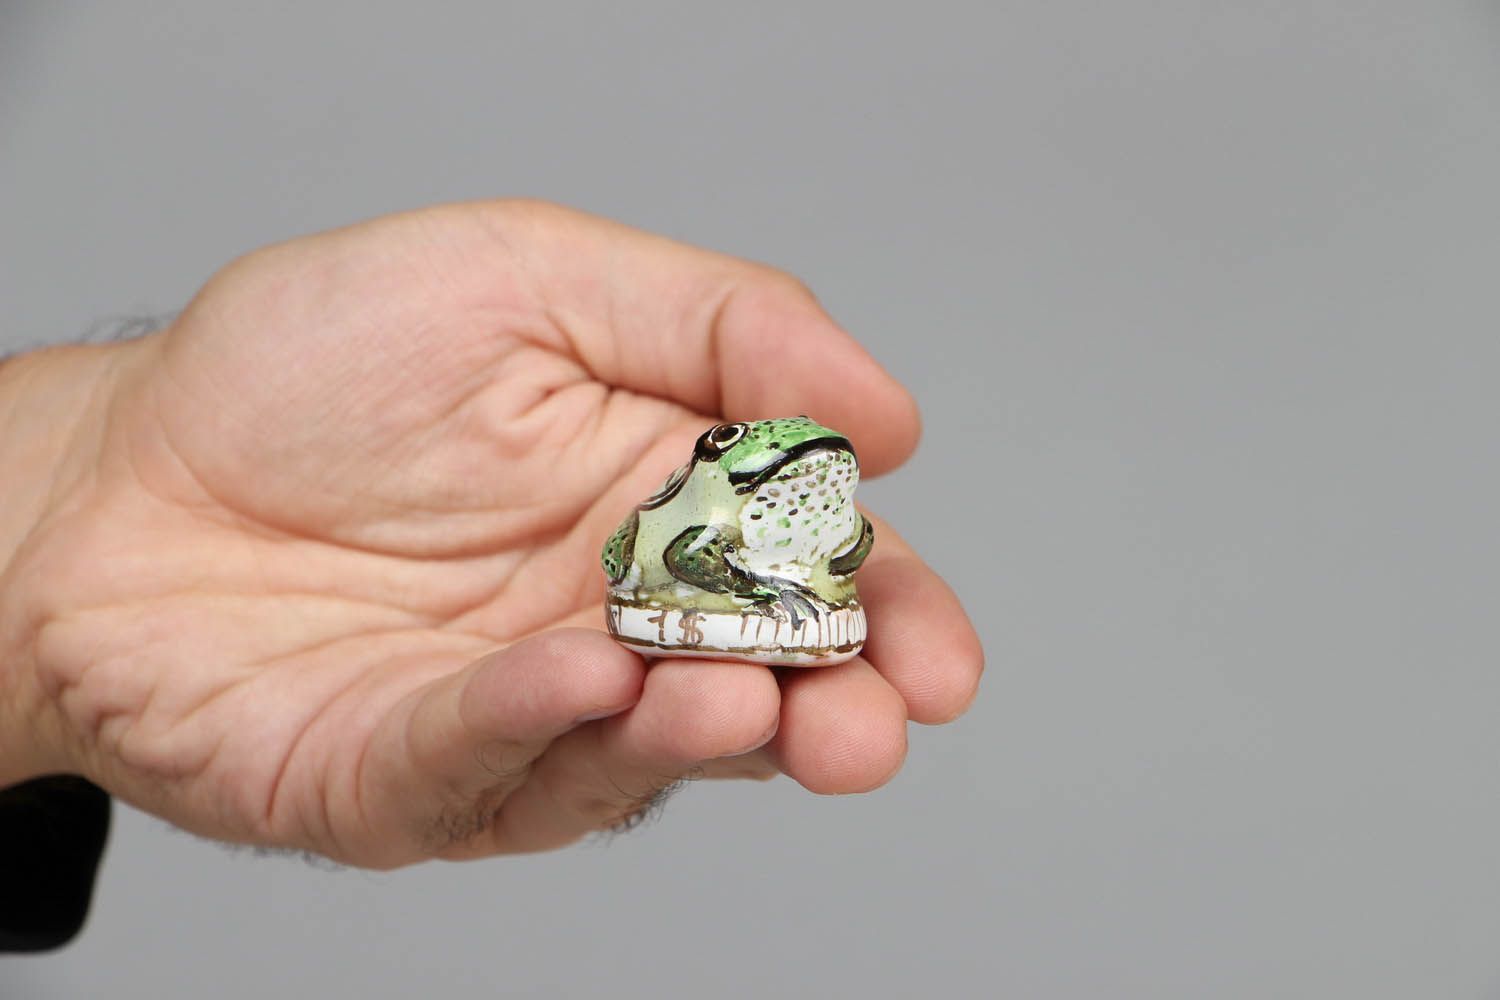 Ceramic frog figurine photo 4